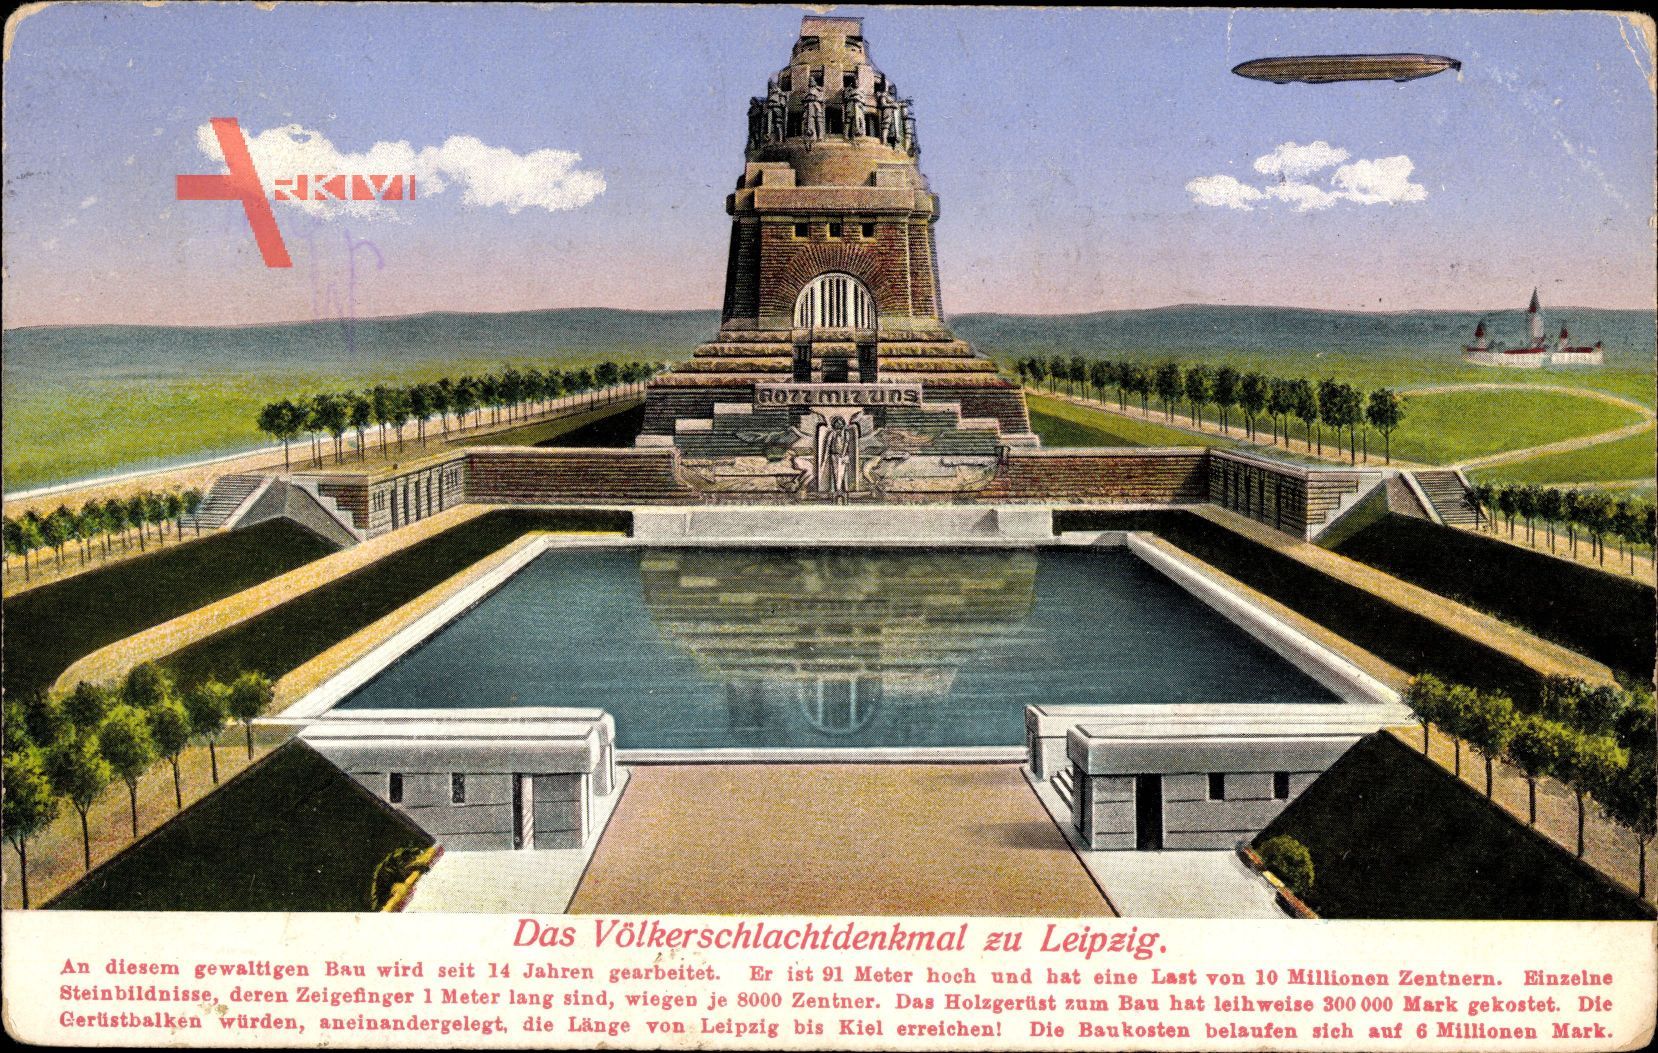 Leipzig in Sachsen, Blick auf das Völkerschlachtdenkmal, Zeppelin